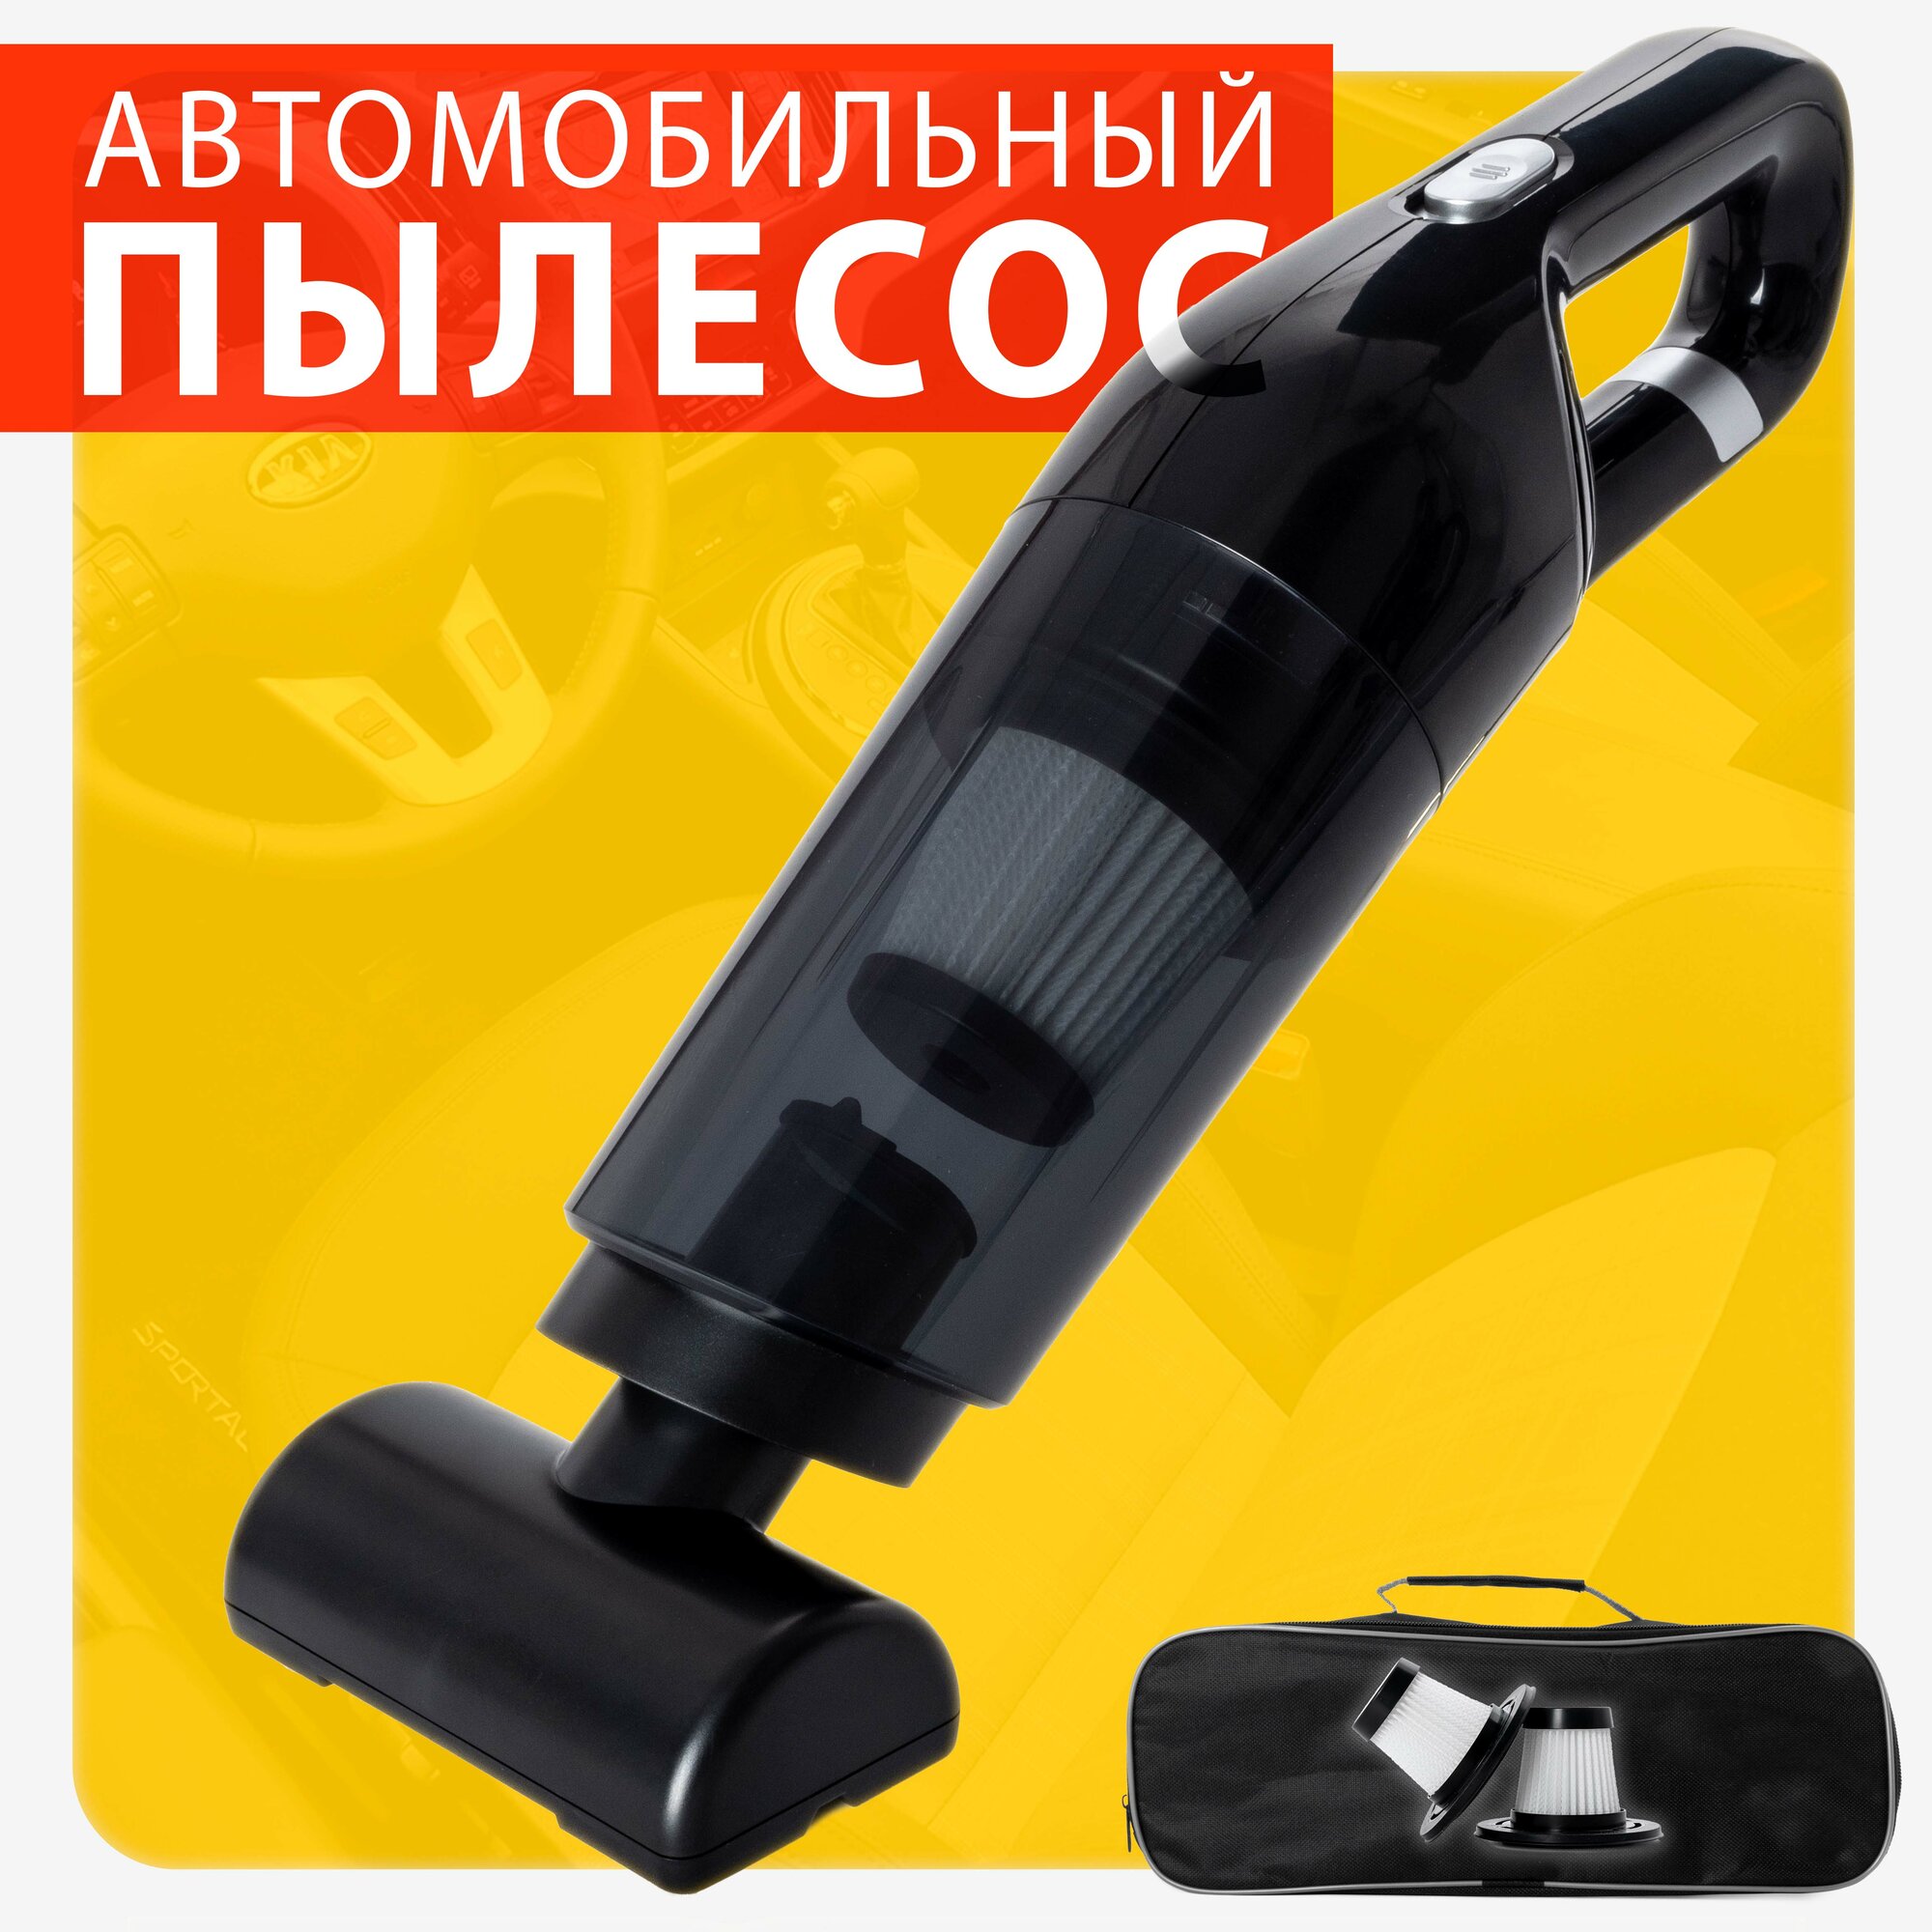 Пылесос автомобильный беспроводной с сумкой мощный аккумуляторный ручкой